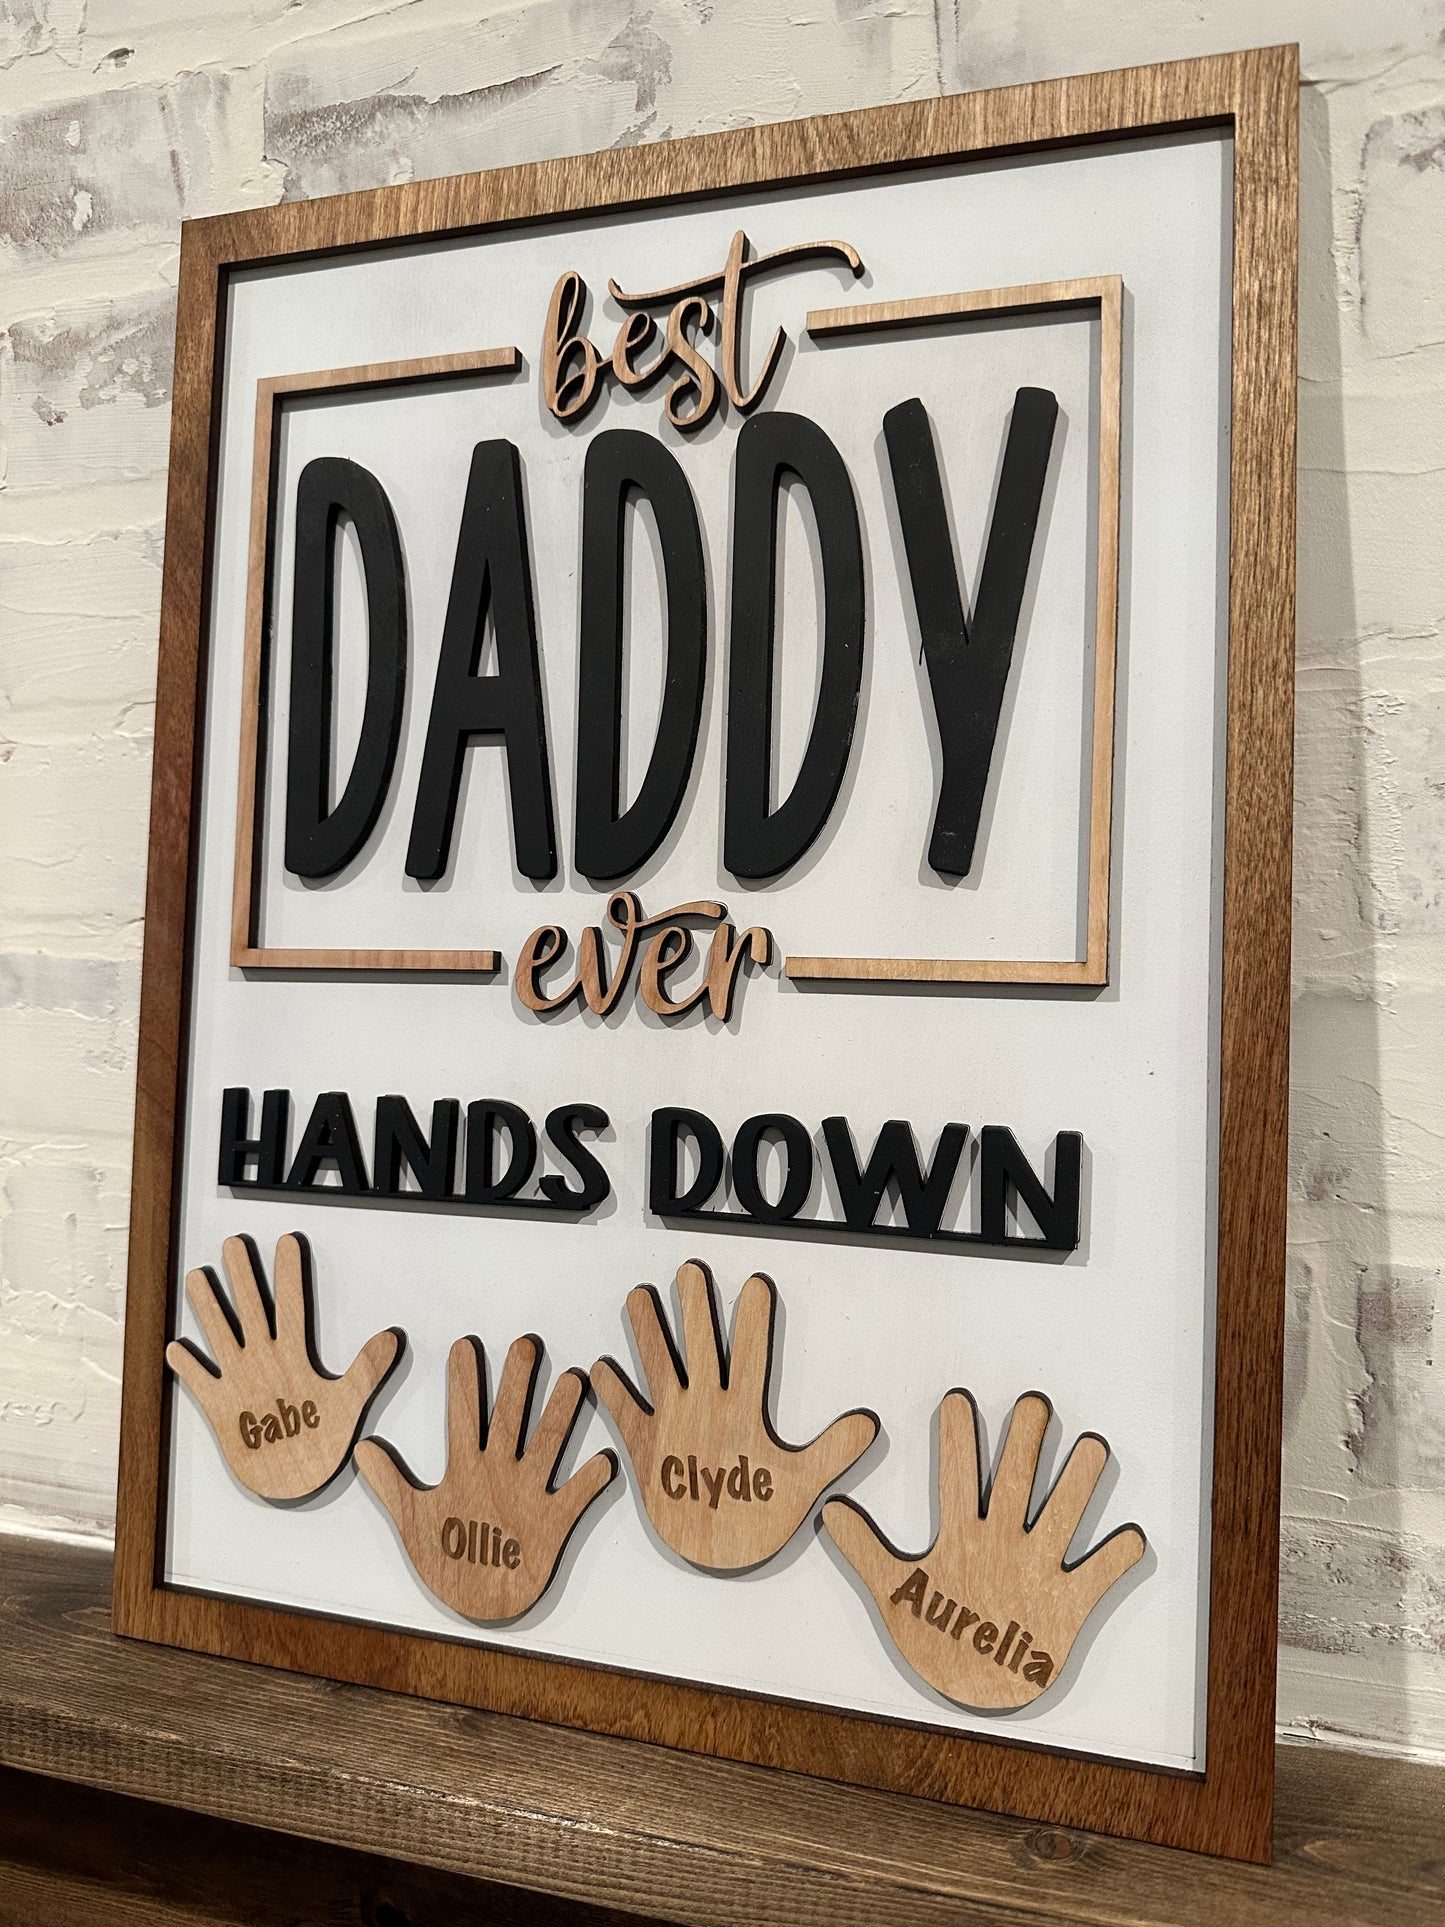 Best Daddy Hands Down